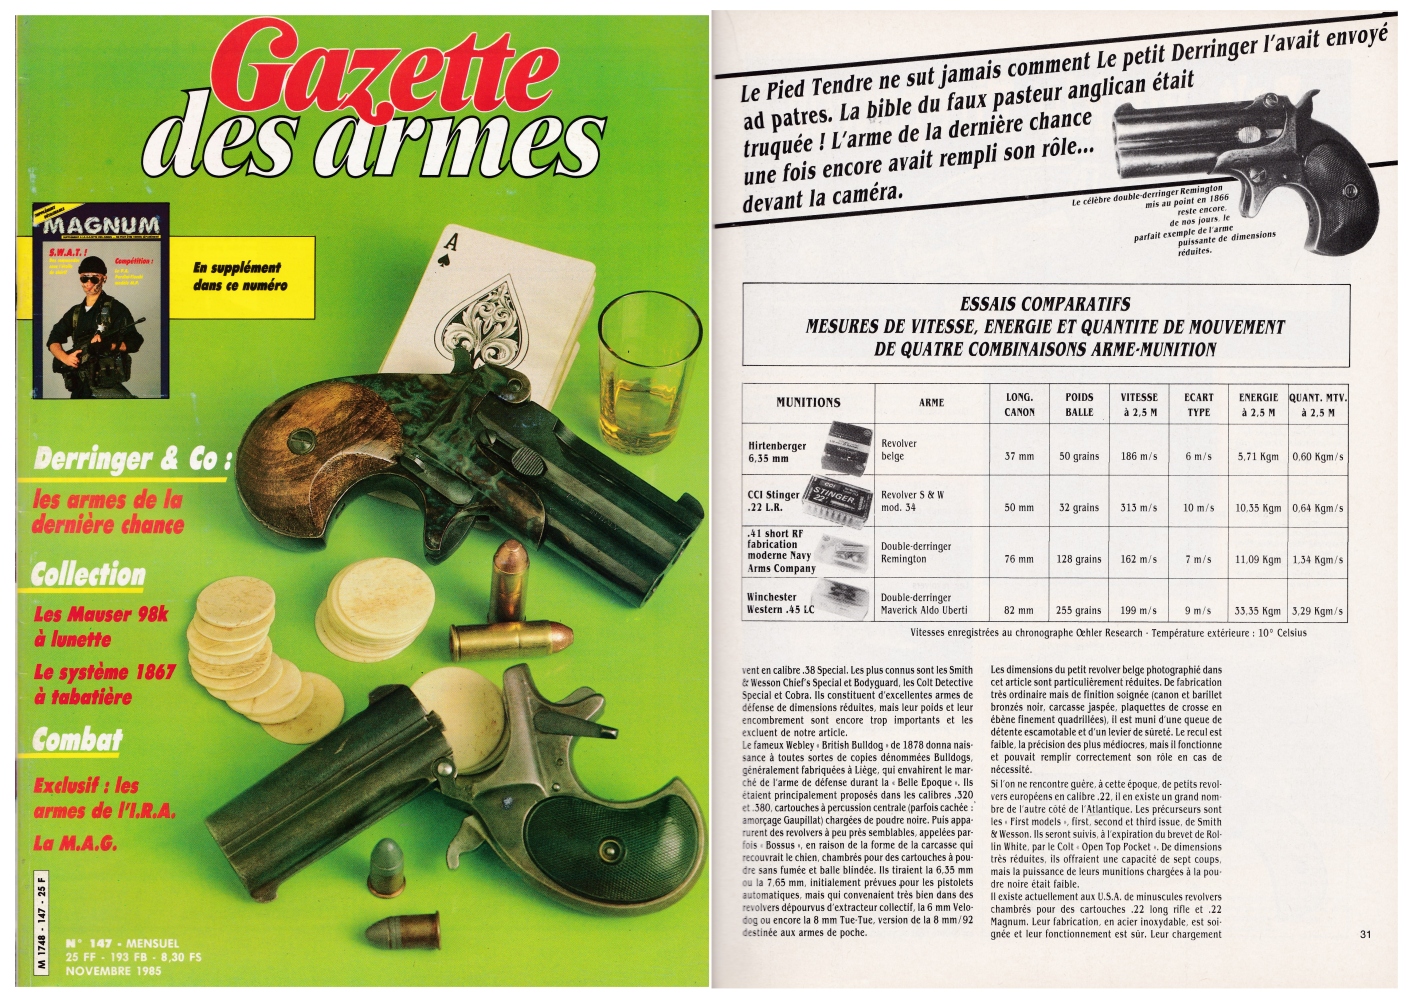 Cet article consacré aux « armes de la dernière chance » a été publié sur 8 pages dans le magazine Gazette des Armes n°147 (novembre 1985).